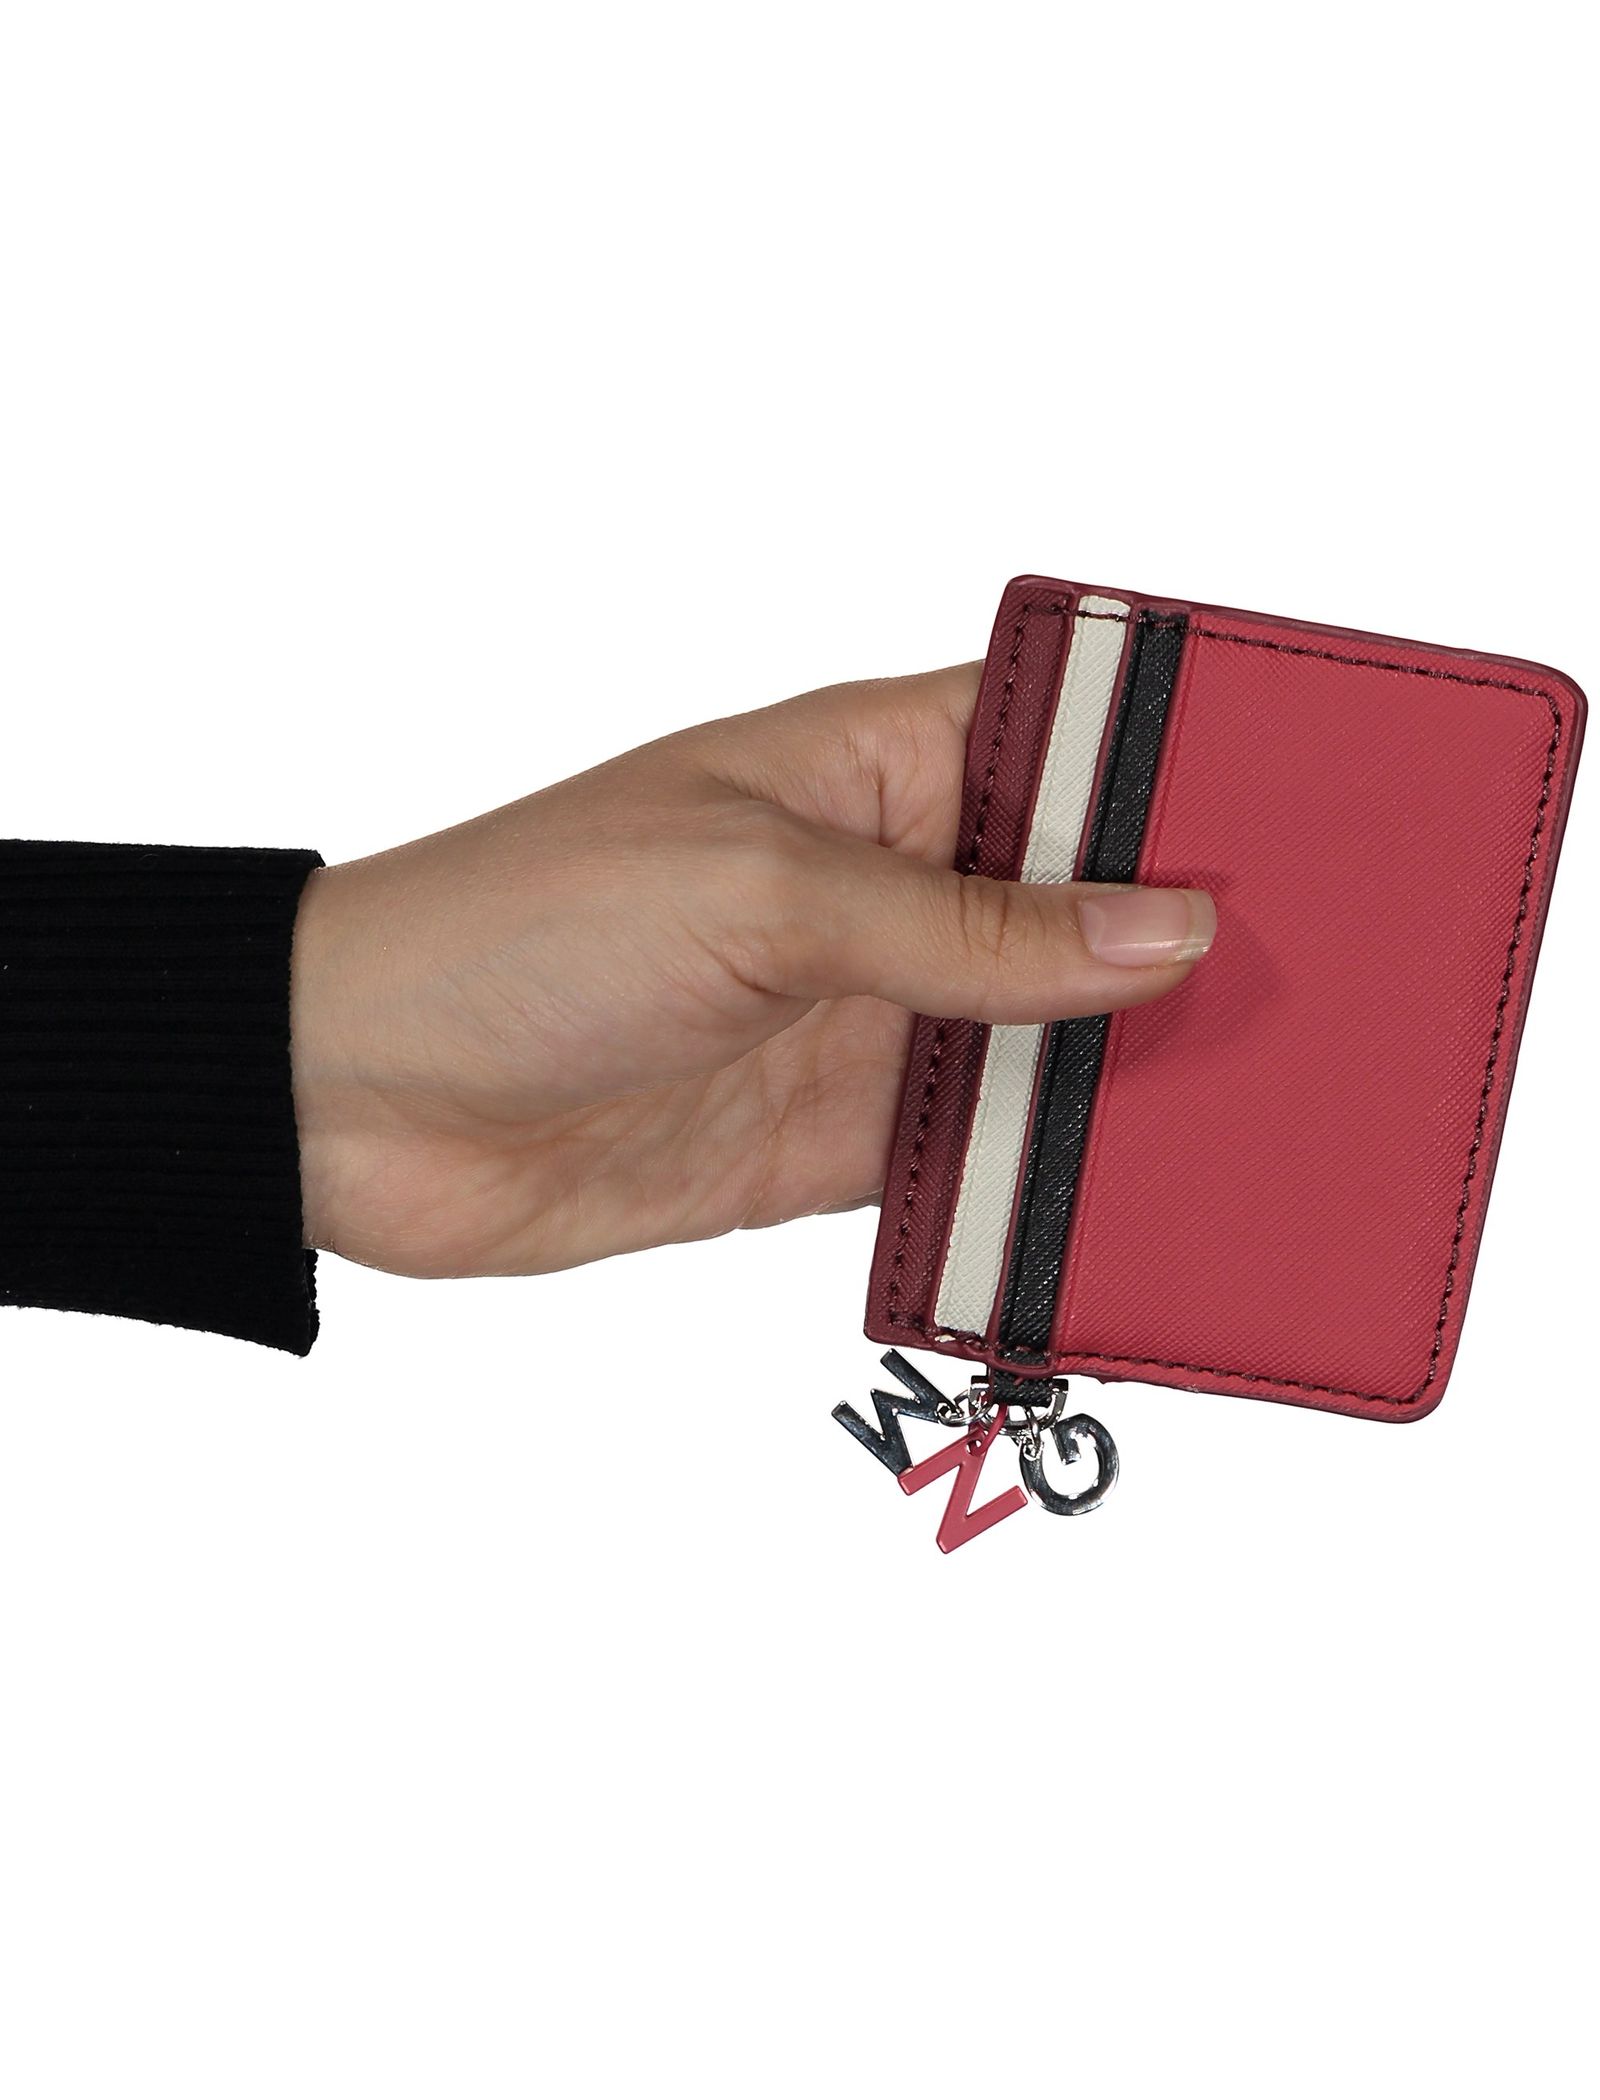 کیف کارت زنانه - مانگو - قرمز - 5